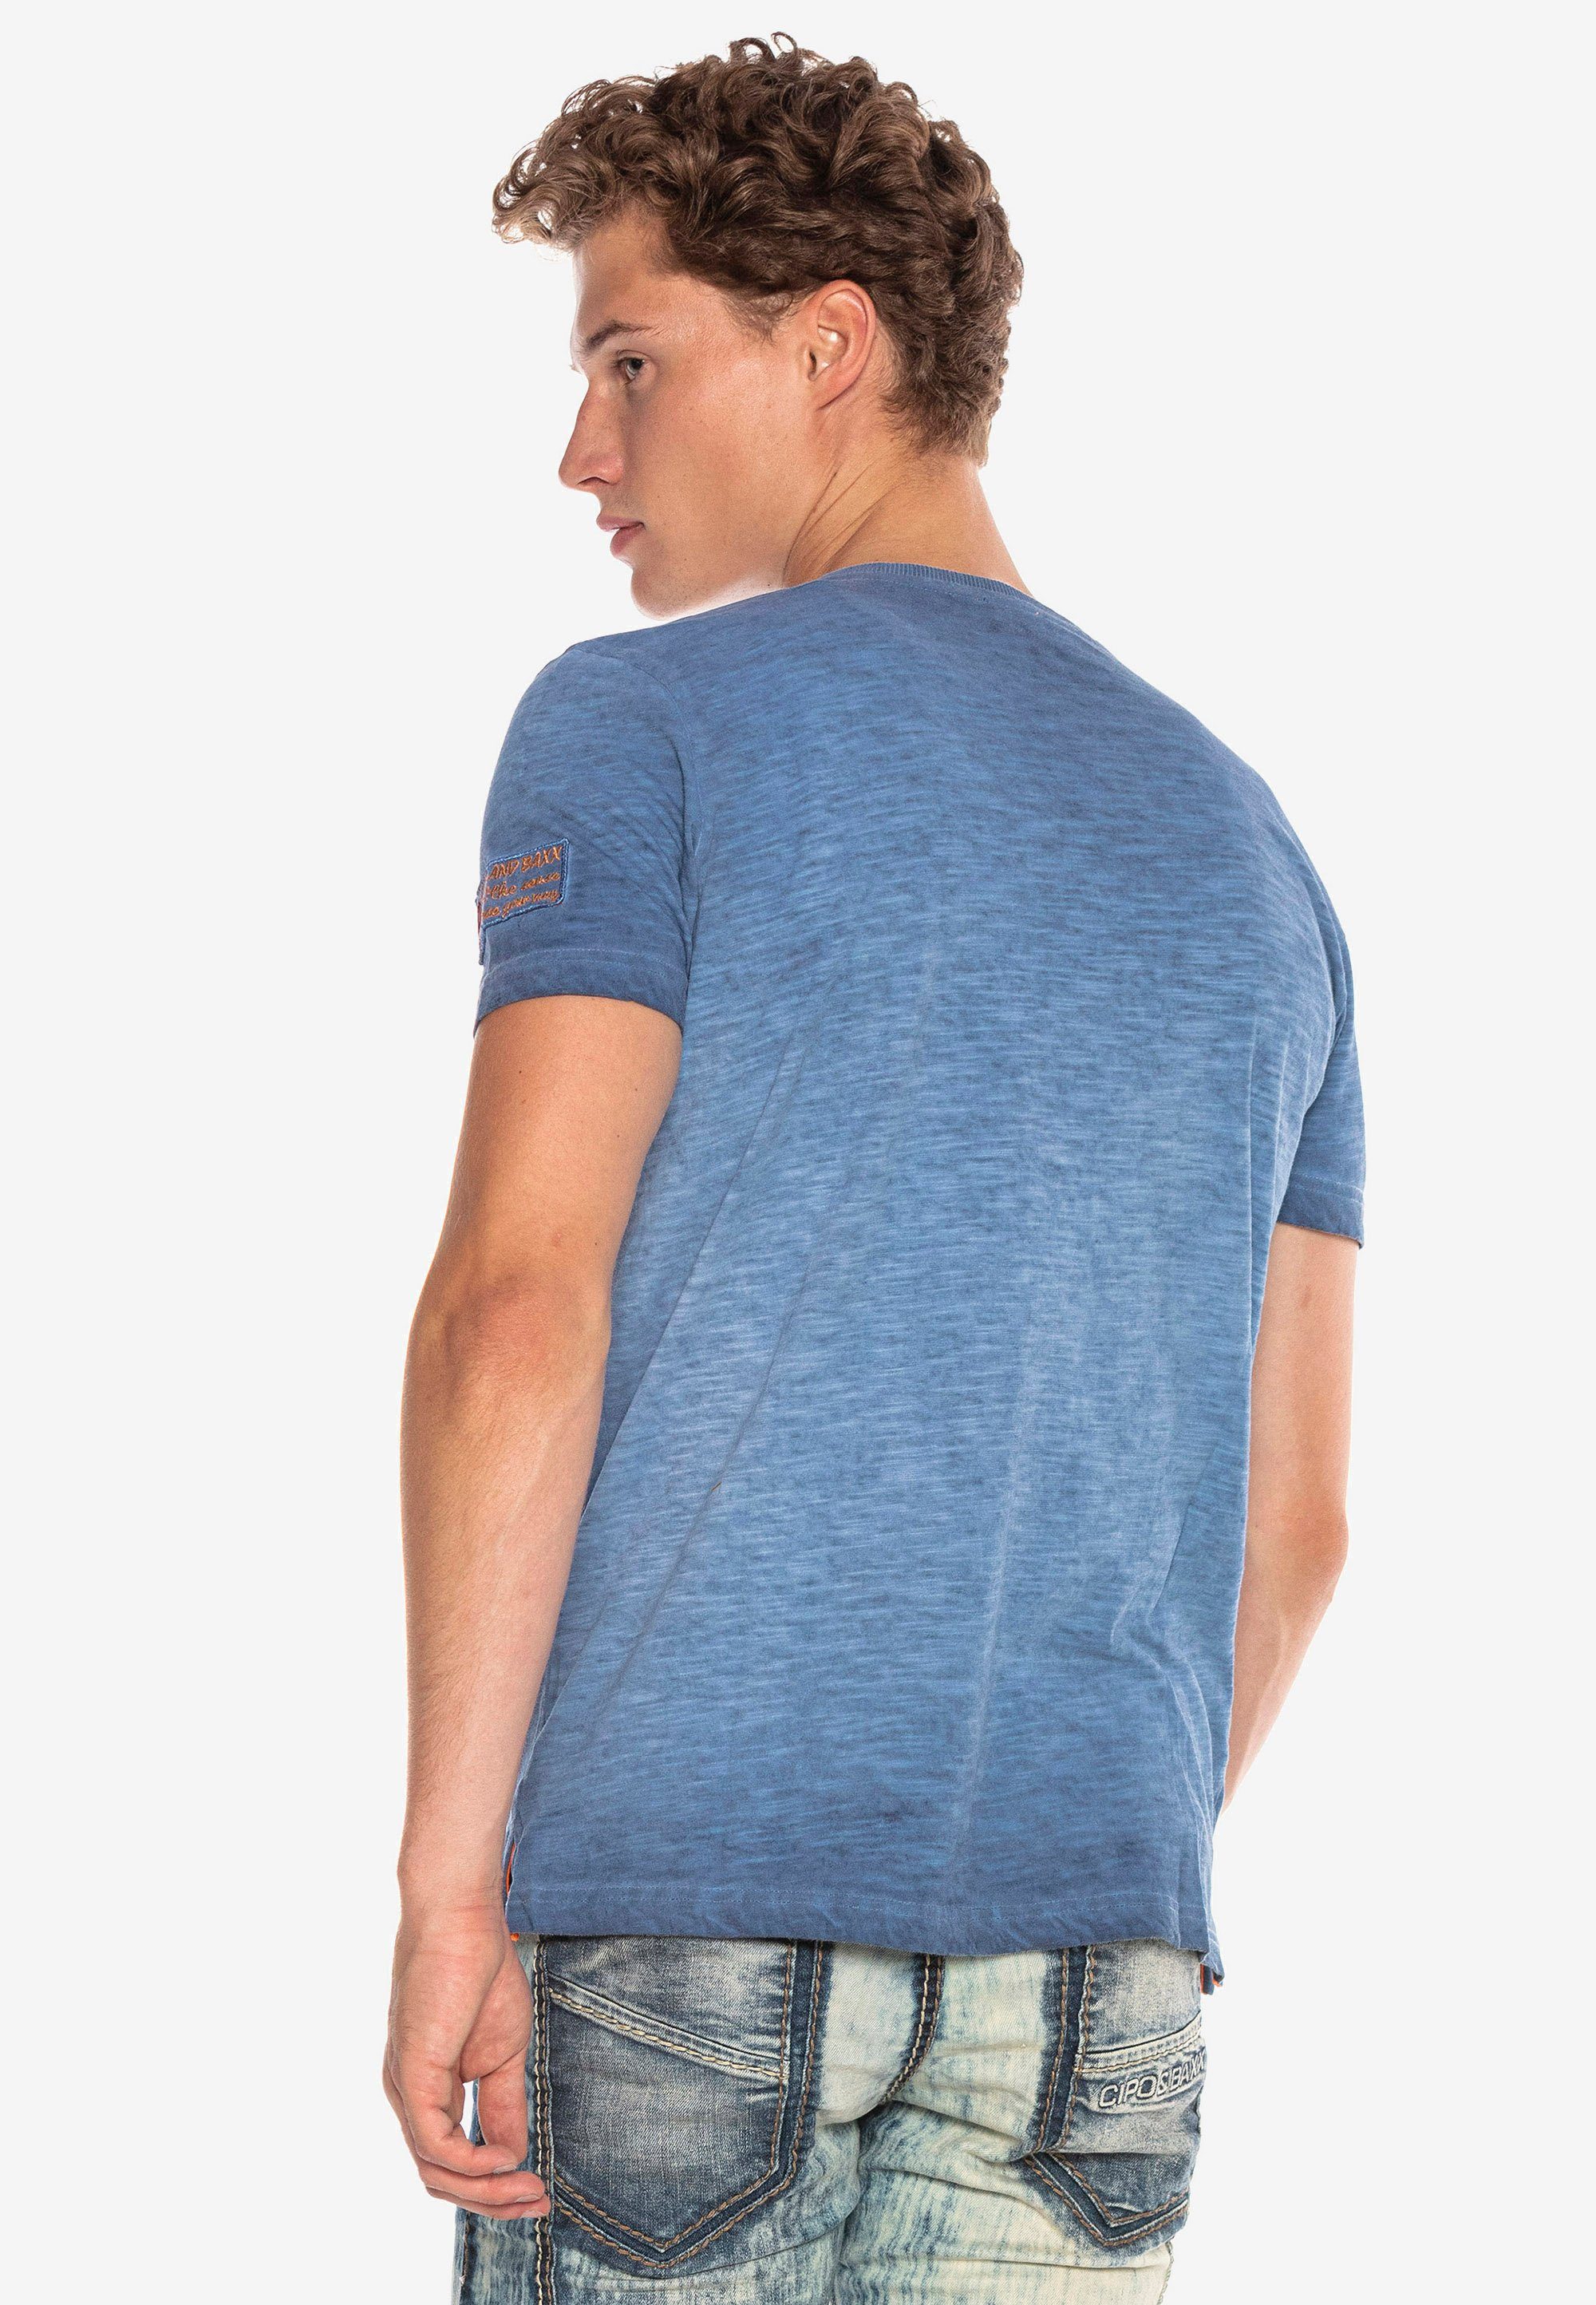 & Cipo T-Shirt kleinem Logo-Patch indigo mit Baxx